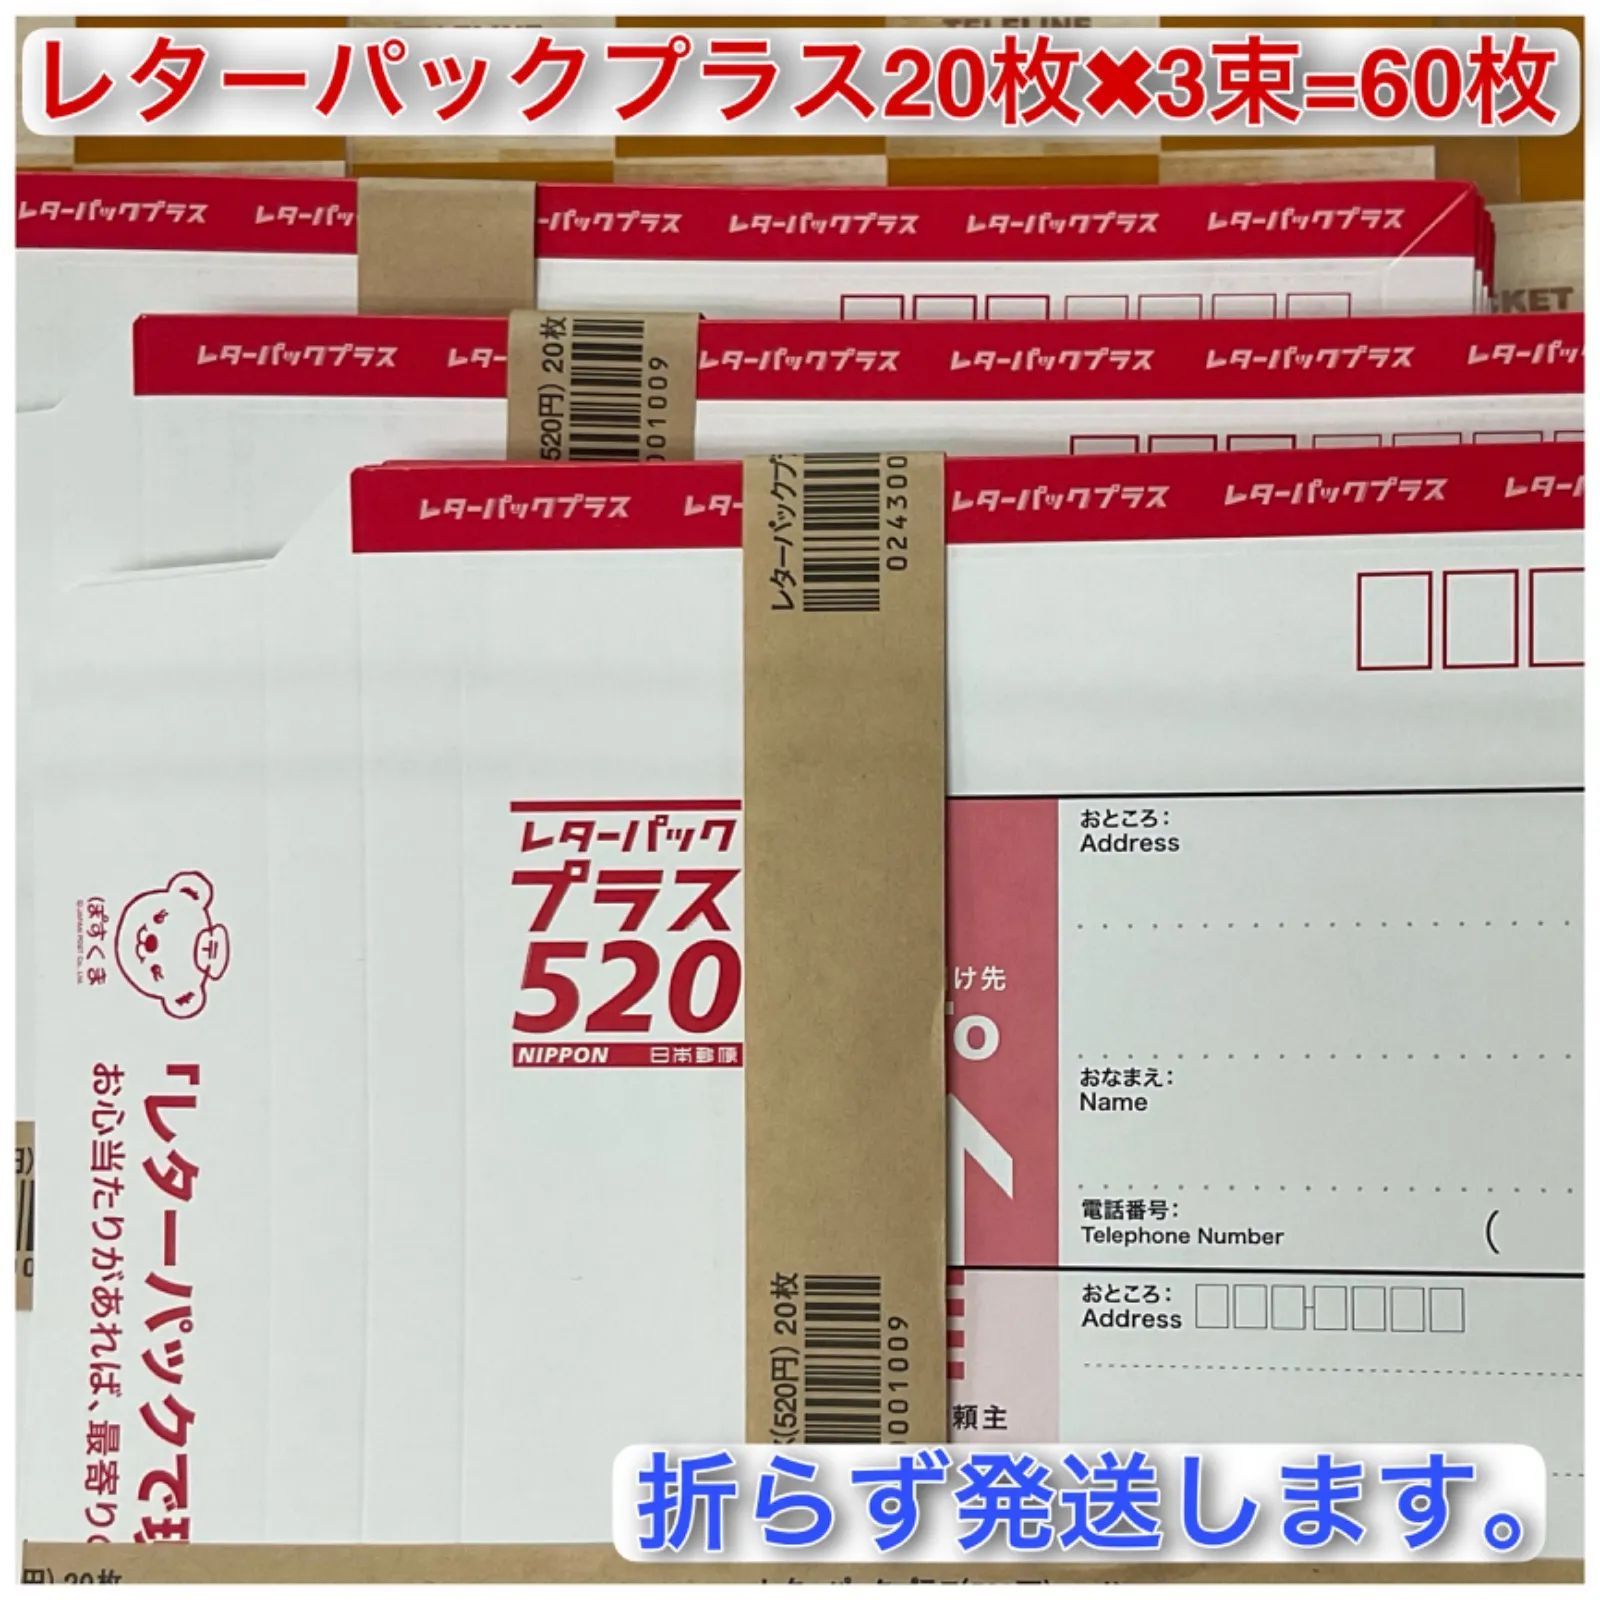 超歓迎在庫 レターパックプラス 520円 20枚の通販 by プロフ必読 ...